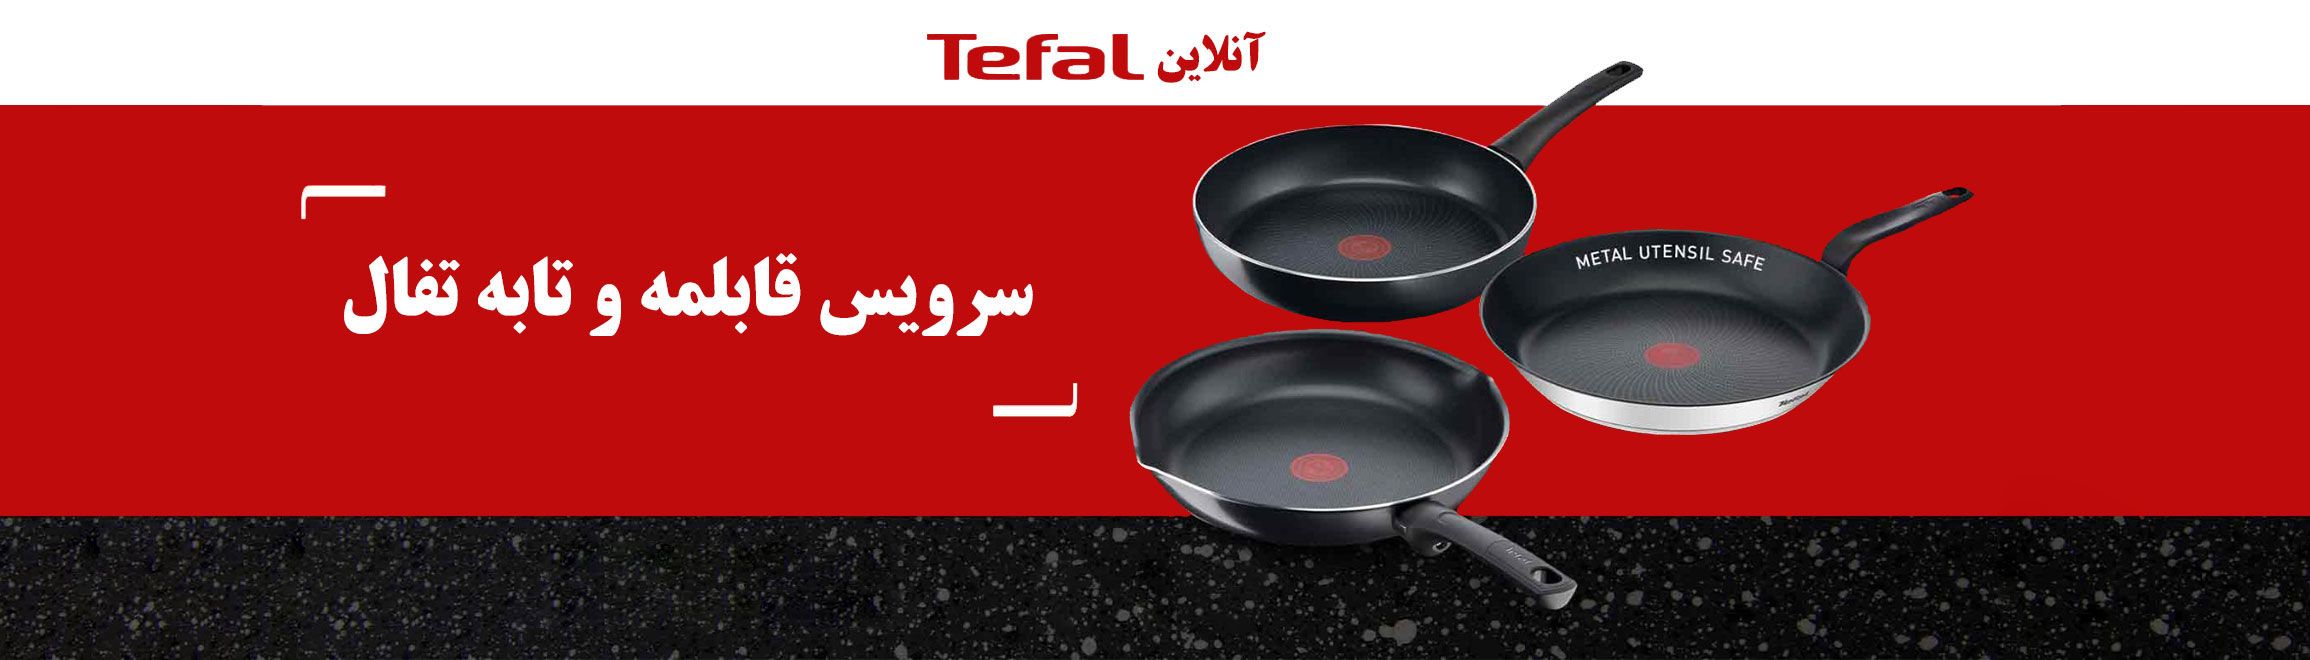 محصولات تفال را از تفال آنلاین ، تنها نماینده رسمی محصولات تفال در ایران خریداری نمایید